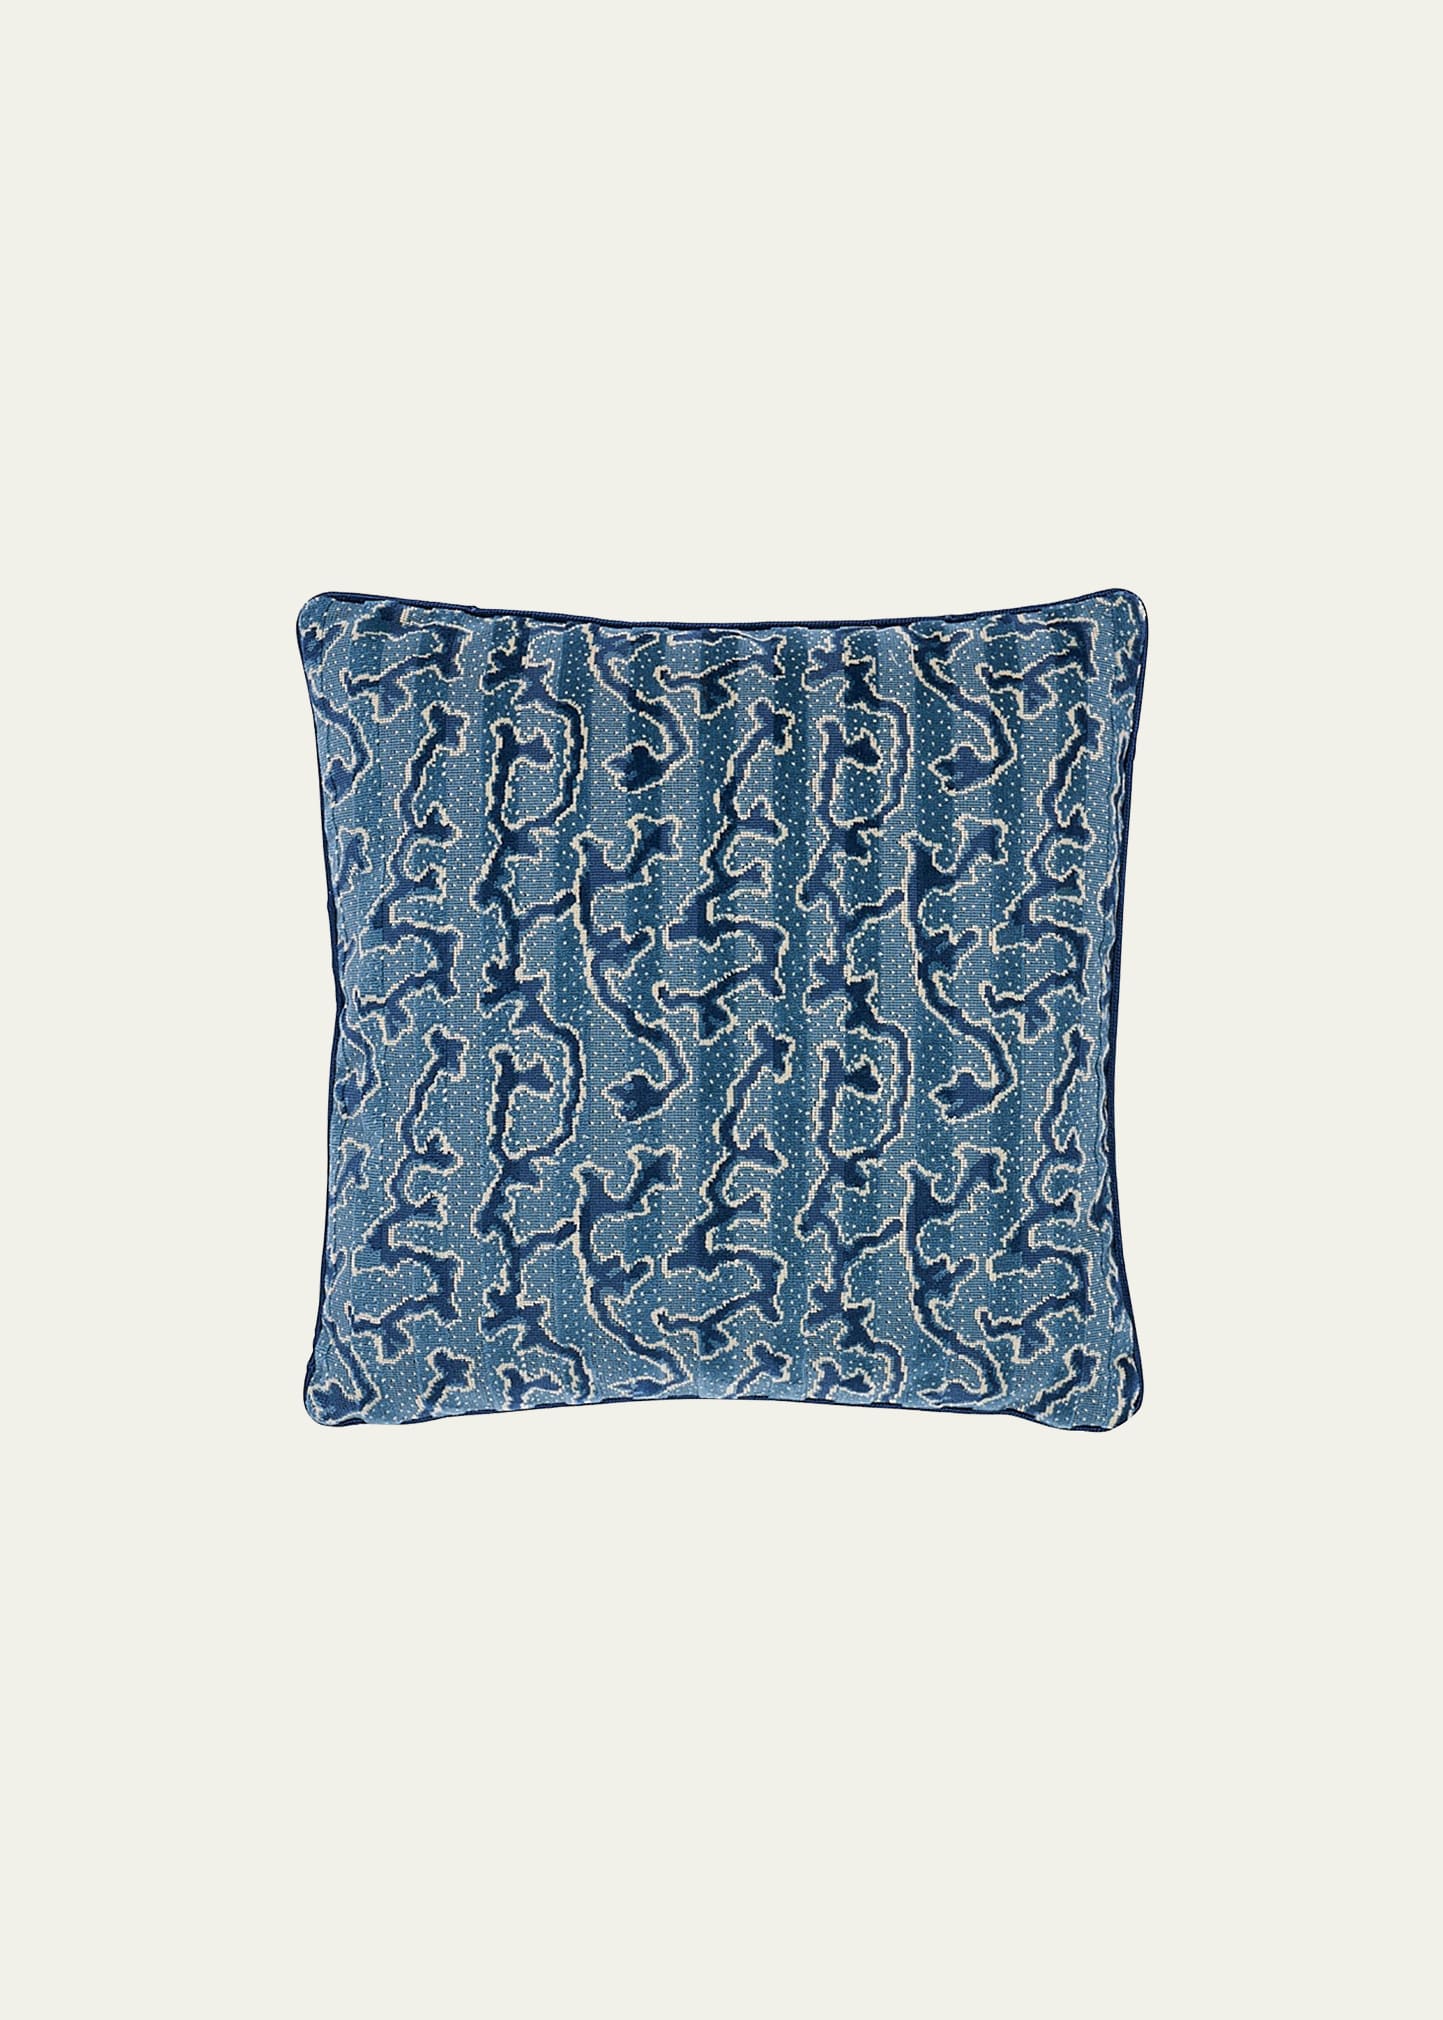 Corail Velvet Pillow, 22"Sq.